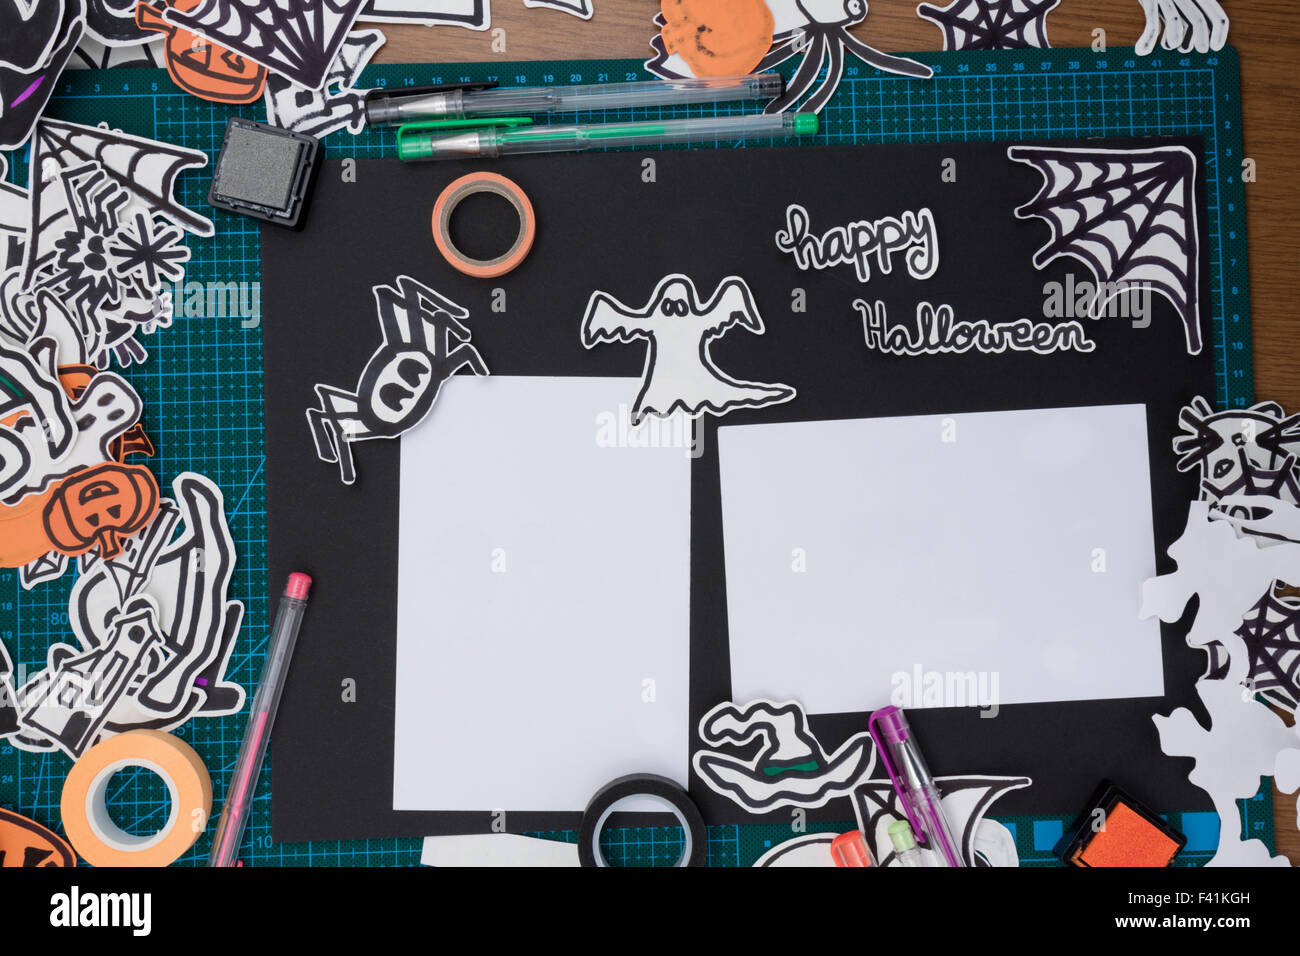 Una vista superior horizontal de un álbum de recortes de Halloween con adornos de diseño y los materiales necesarios Foto de stock